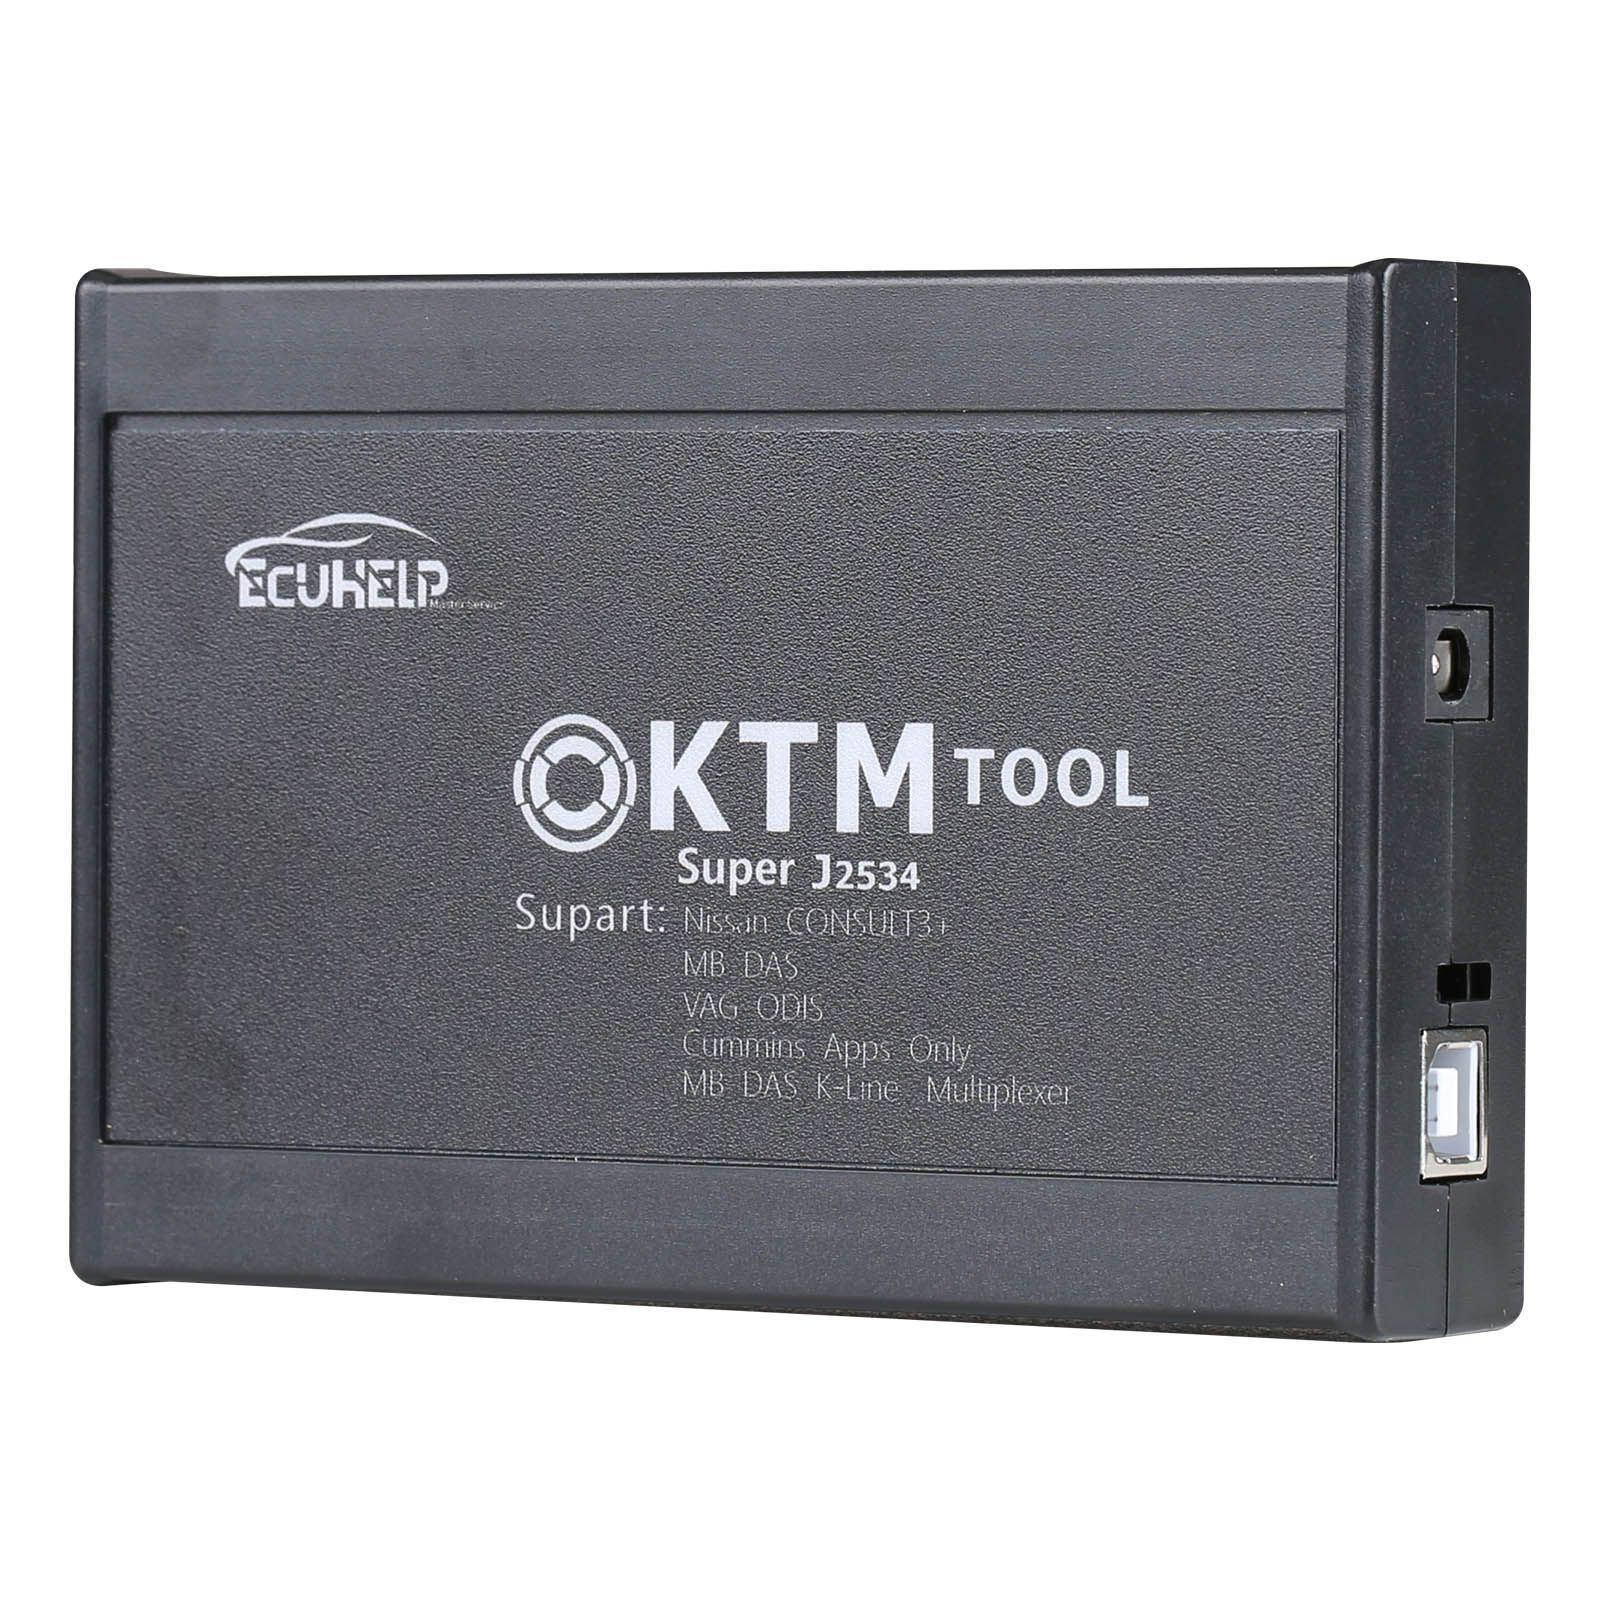 Ktm200 67 a ajouté 200 écus à la mise à jour du programmeur ktm100 ktag renolink OBD2, y compris pcr2.1 PSA sid208